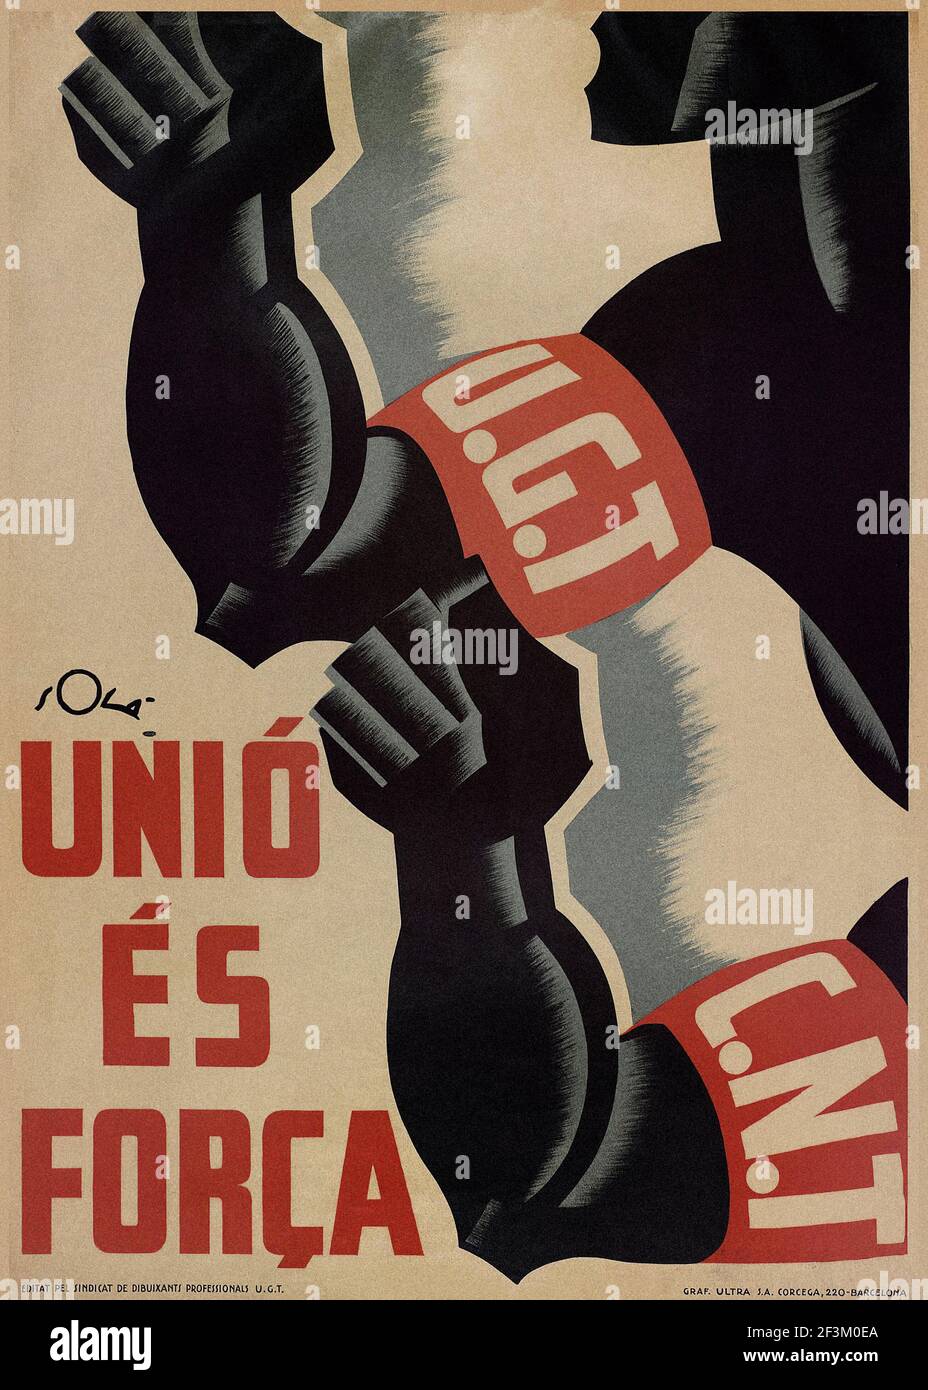 Adelante luchadores de la libertad Vintage Spanish Civil War Propaganda Poster 